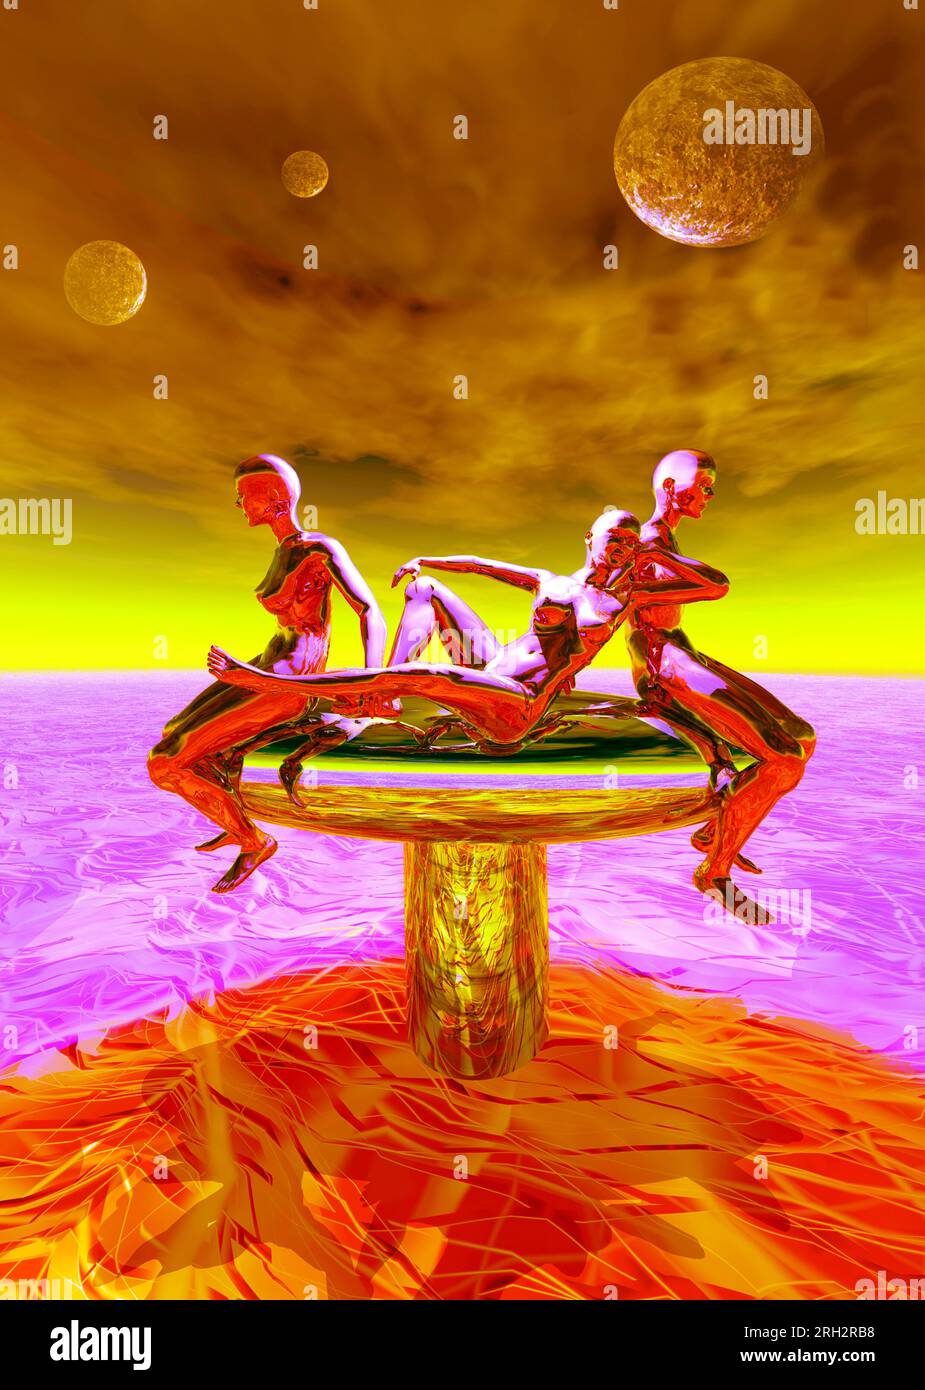 Drei außerirdische weibliche Humanoide, die auf einem Stan ruhen, flüssiges Metall darunter und Monde am Himmel Stockfoto